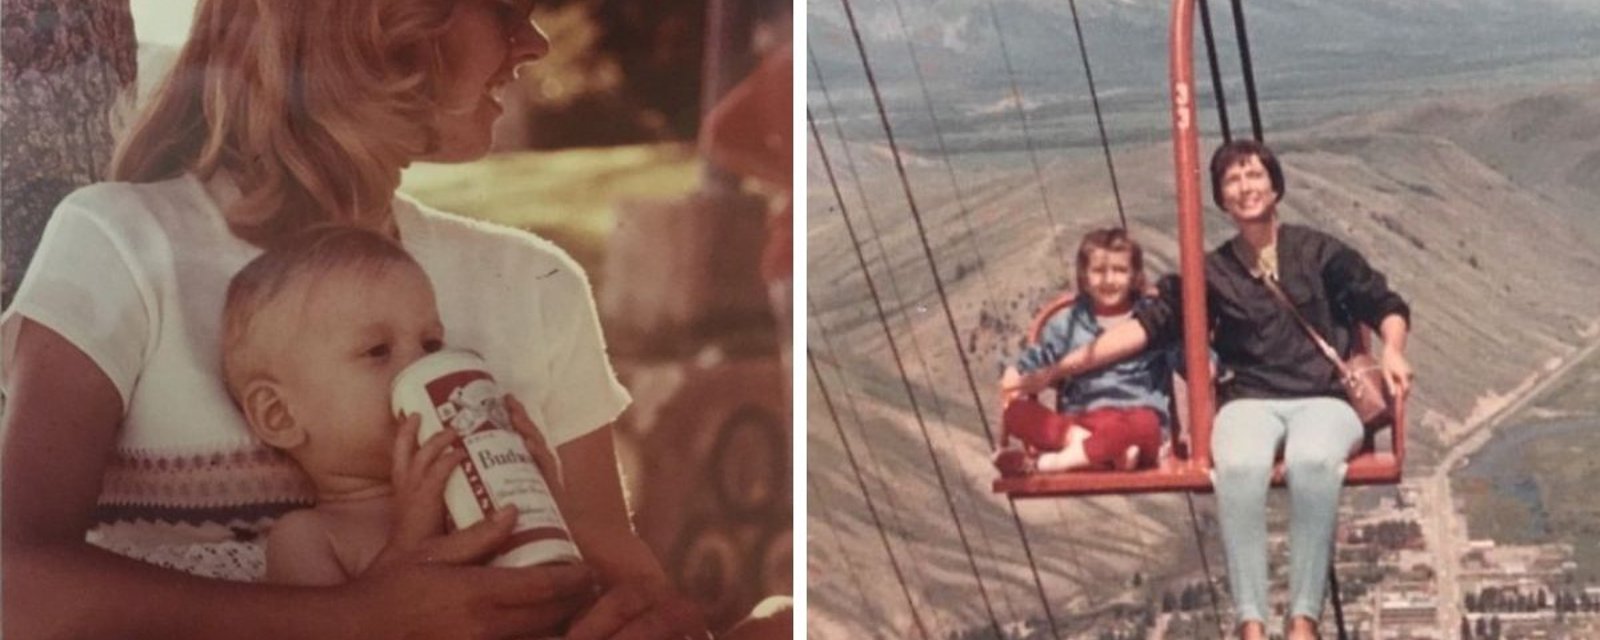 13 photos montrant ce que les parents faisaient autrefois et qui serait très mal vu aujourd'hui